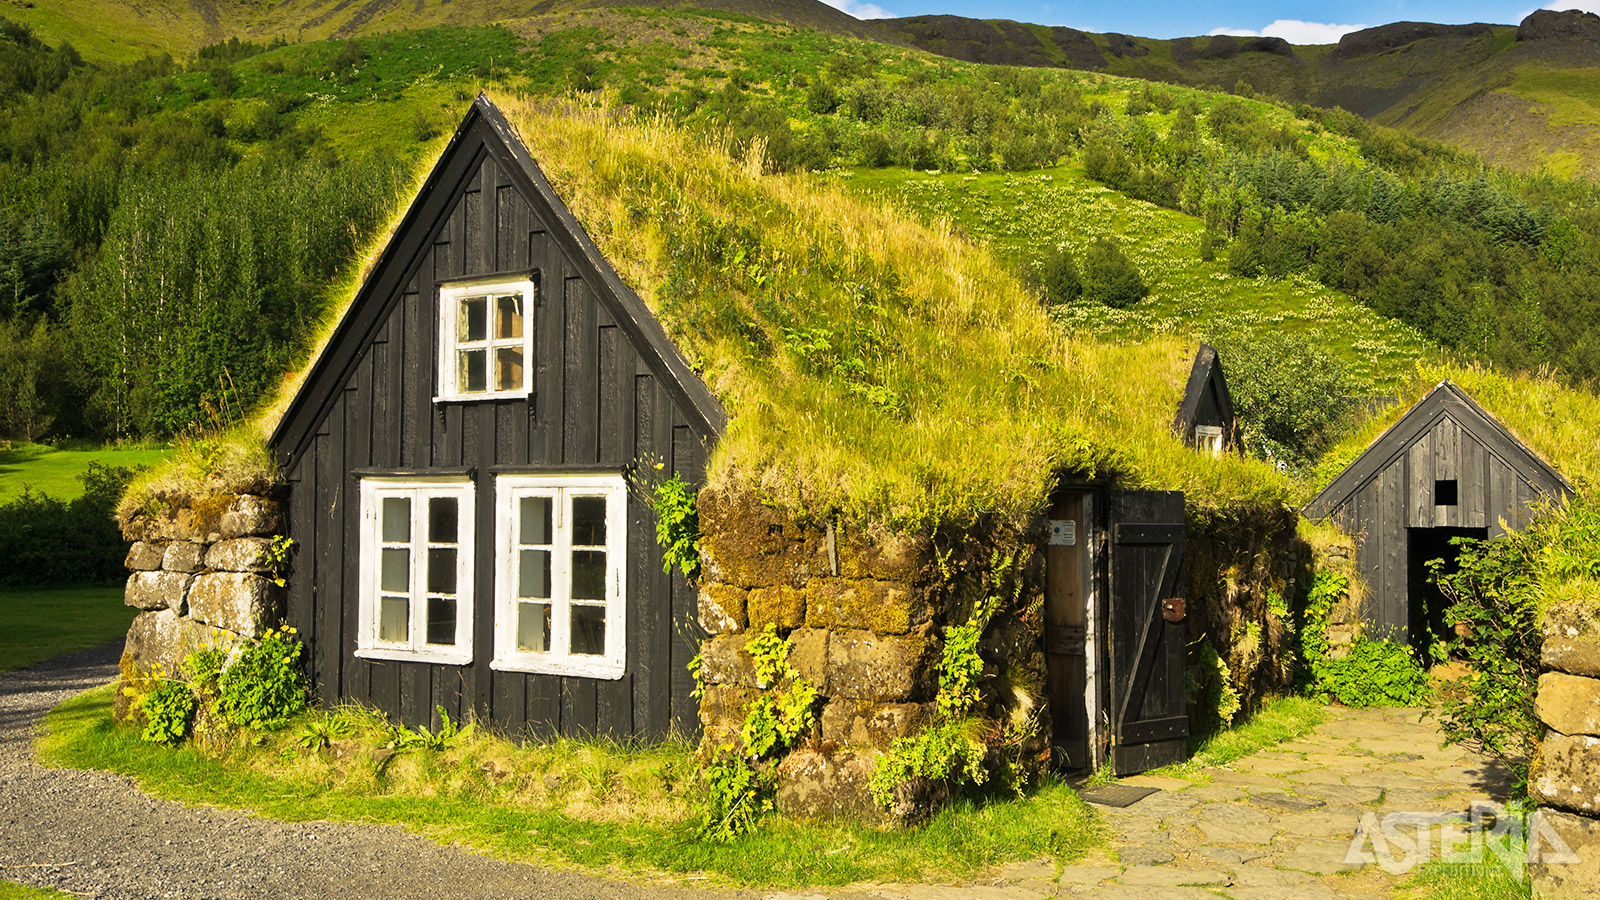 Het kleine dorpje Skógar ligt ten zuidoosten van de gletsjer Eyjafjallajökull en telt slechts 25 inwoners